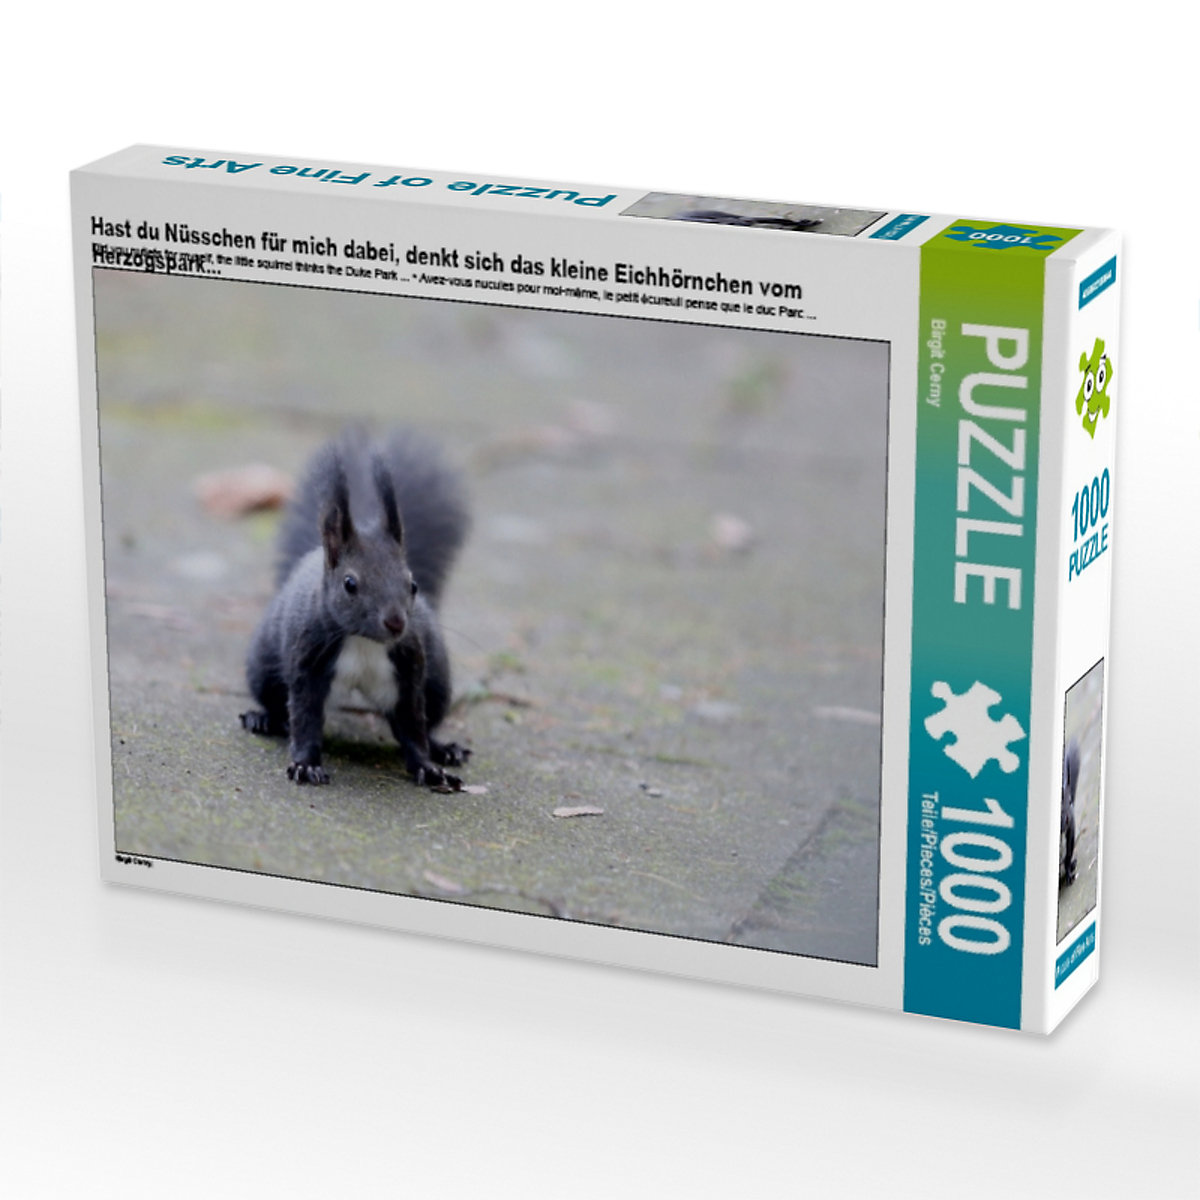 CALVENDO® Puzzle CALVENDO Puzzle Hast du Nüsschen für mich dabei denkt sich das kleine Eichhörnchen vom Herzogspark... 1000 Teile Foto-Puzzle für glückliche Stunden